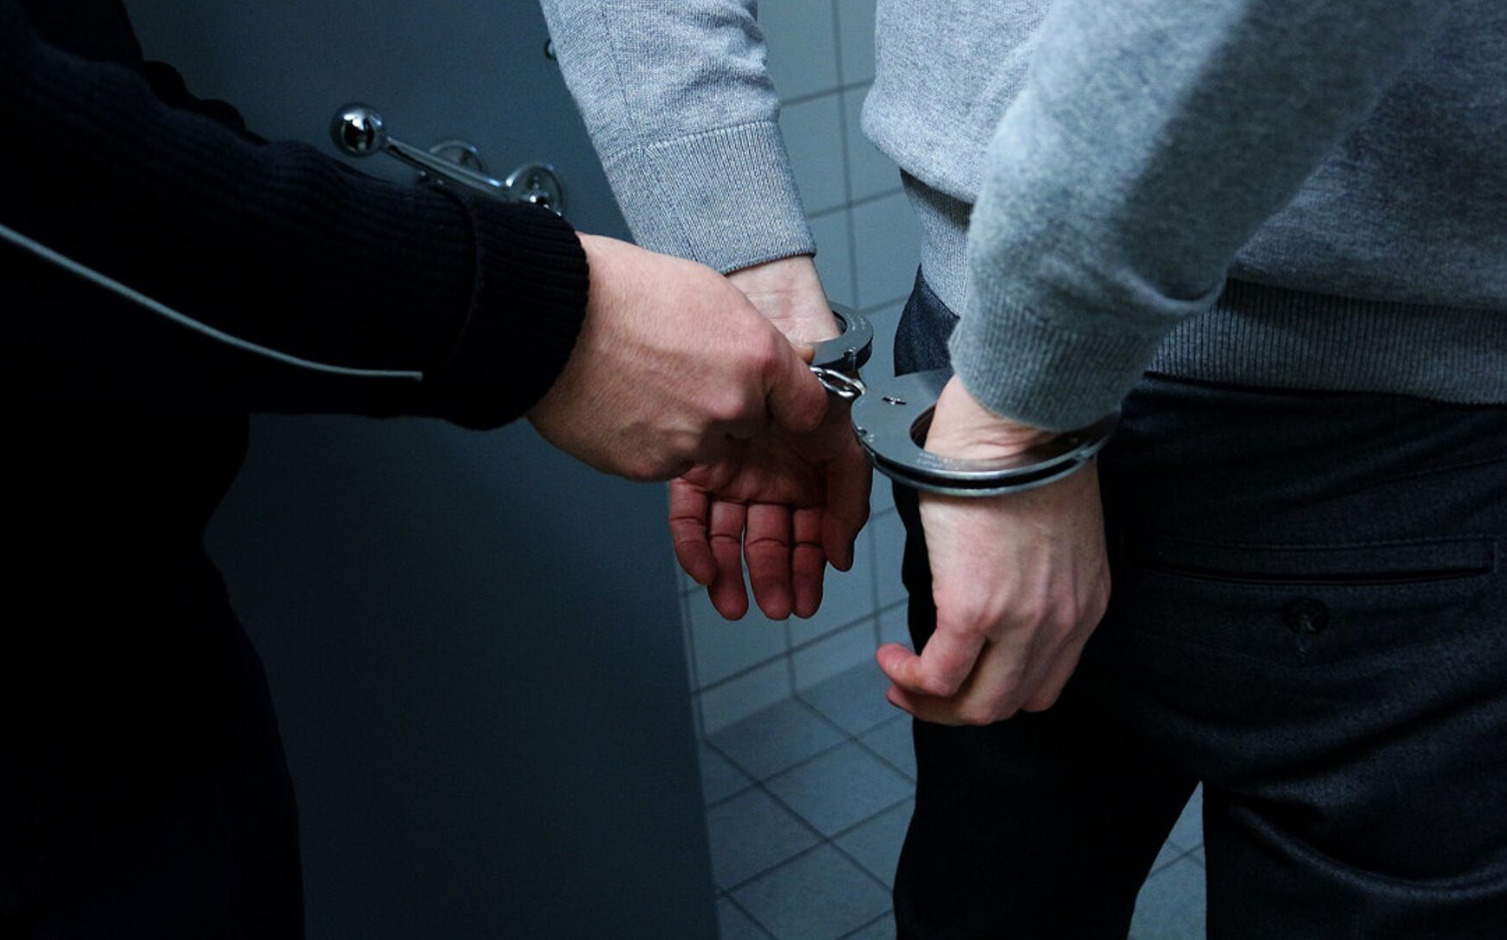 В Екатеринбурге задержали троих граждан, по заказу избивавших закладчиков наркотиков